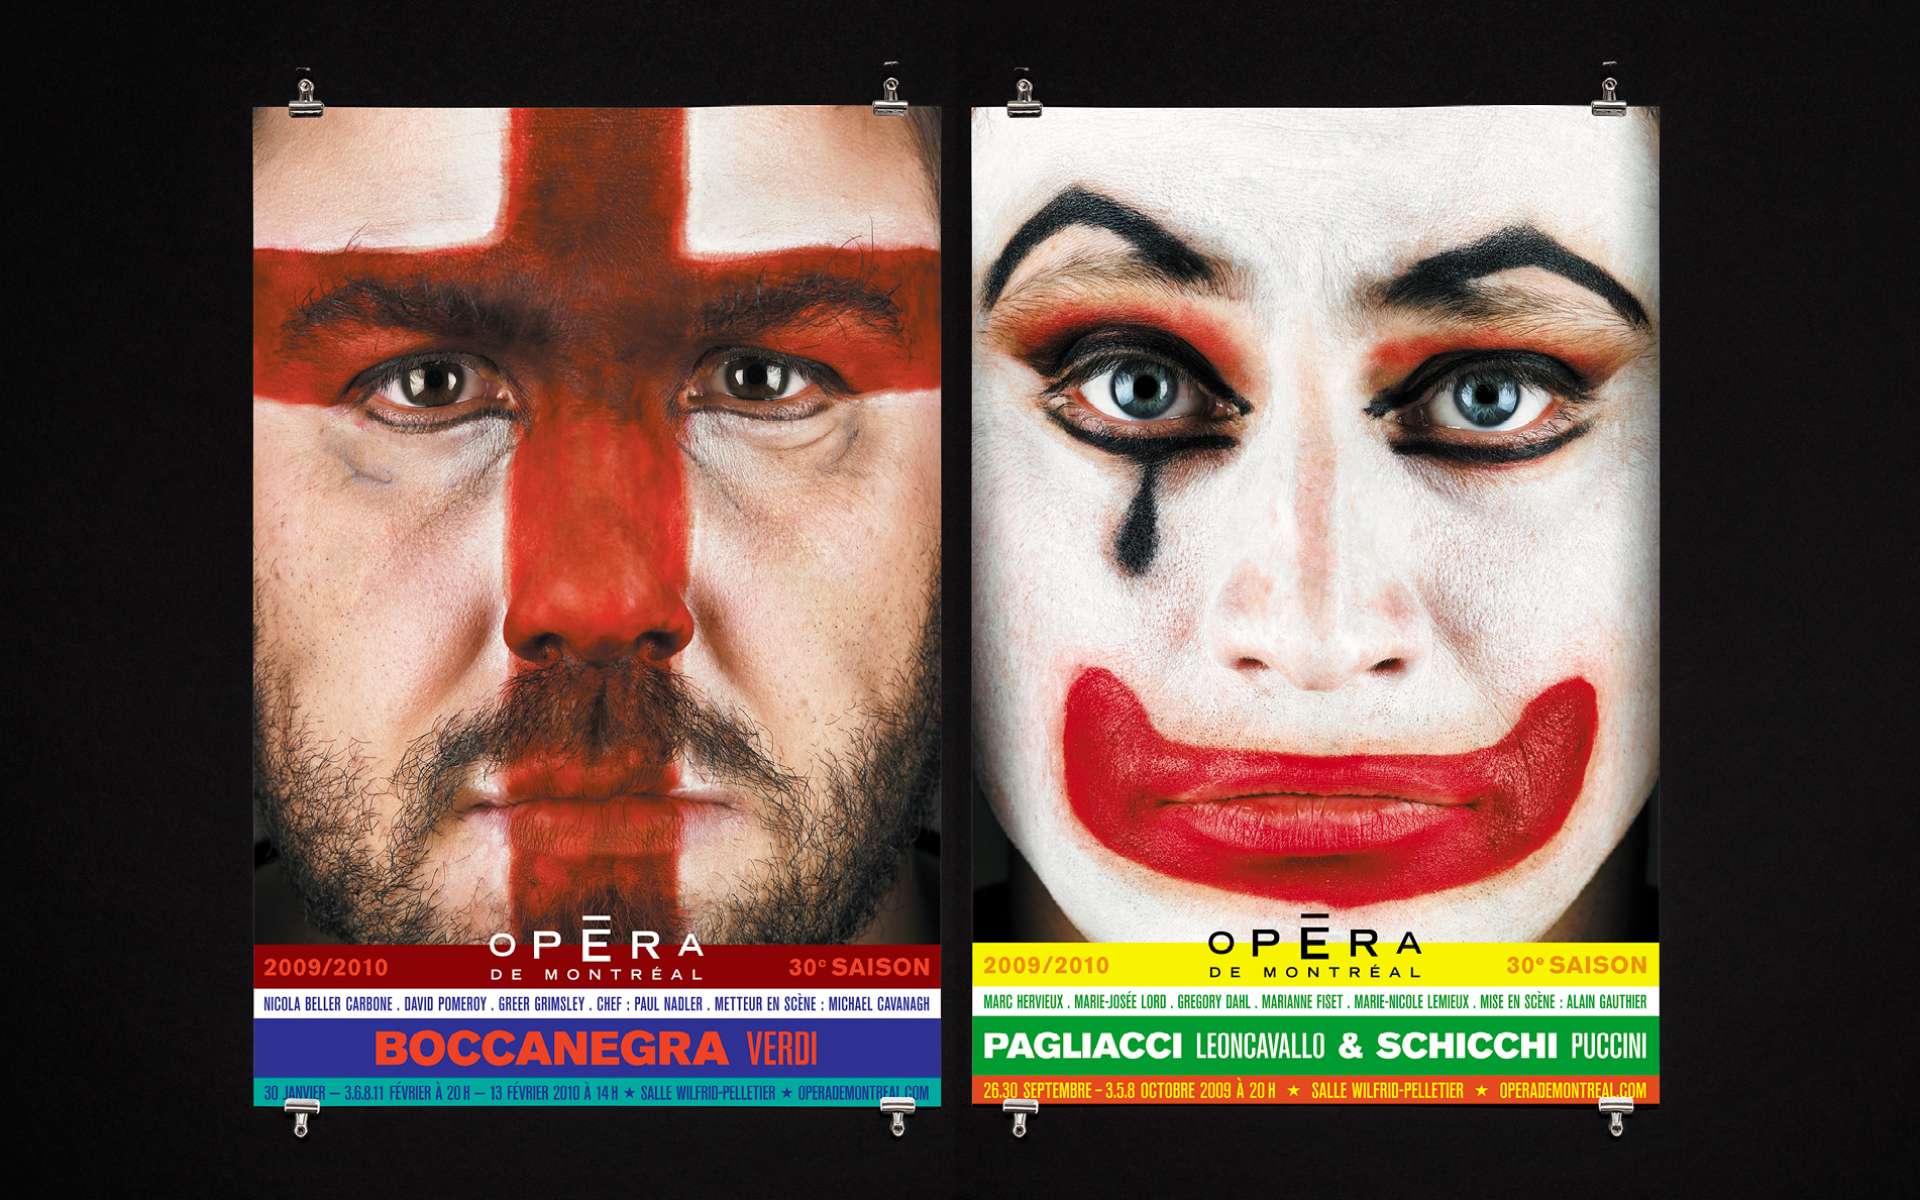 Opéra de Montréal - Campagne 2001 - 2011- Les visages